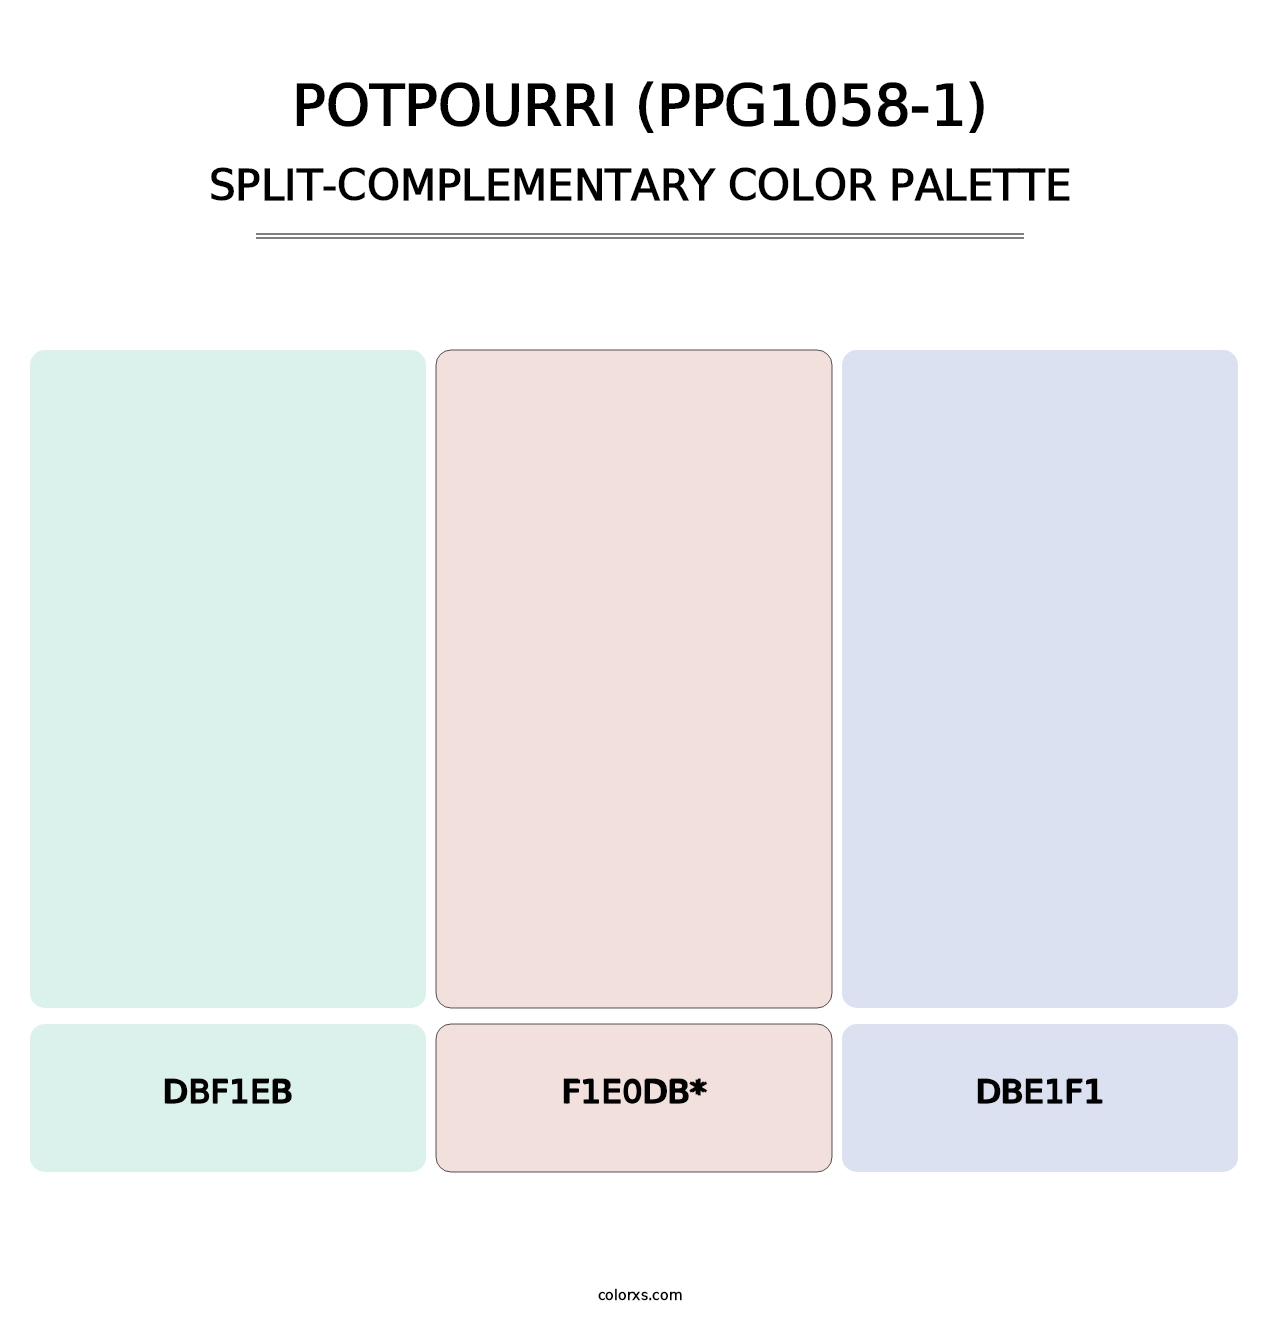 Potpourri (PPG1058-1) - Split-Complementary Color Palette